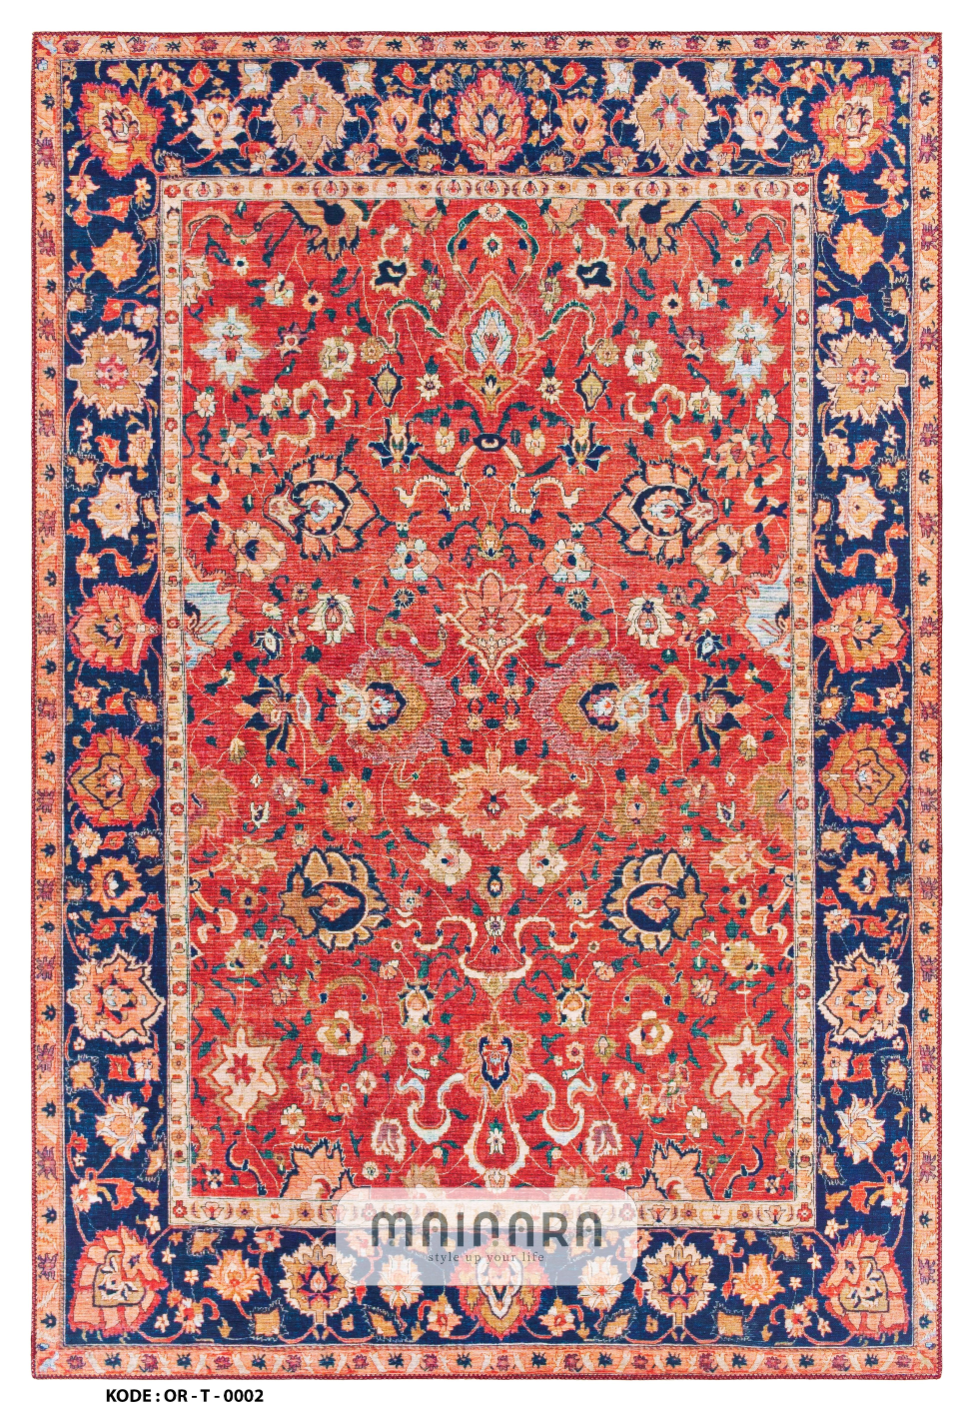 Karpet Tradisional (OR-T-0002) - Orange,Blue